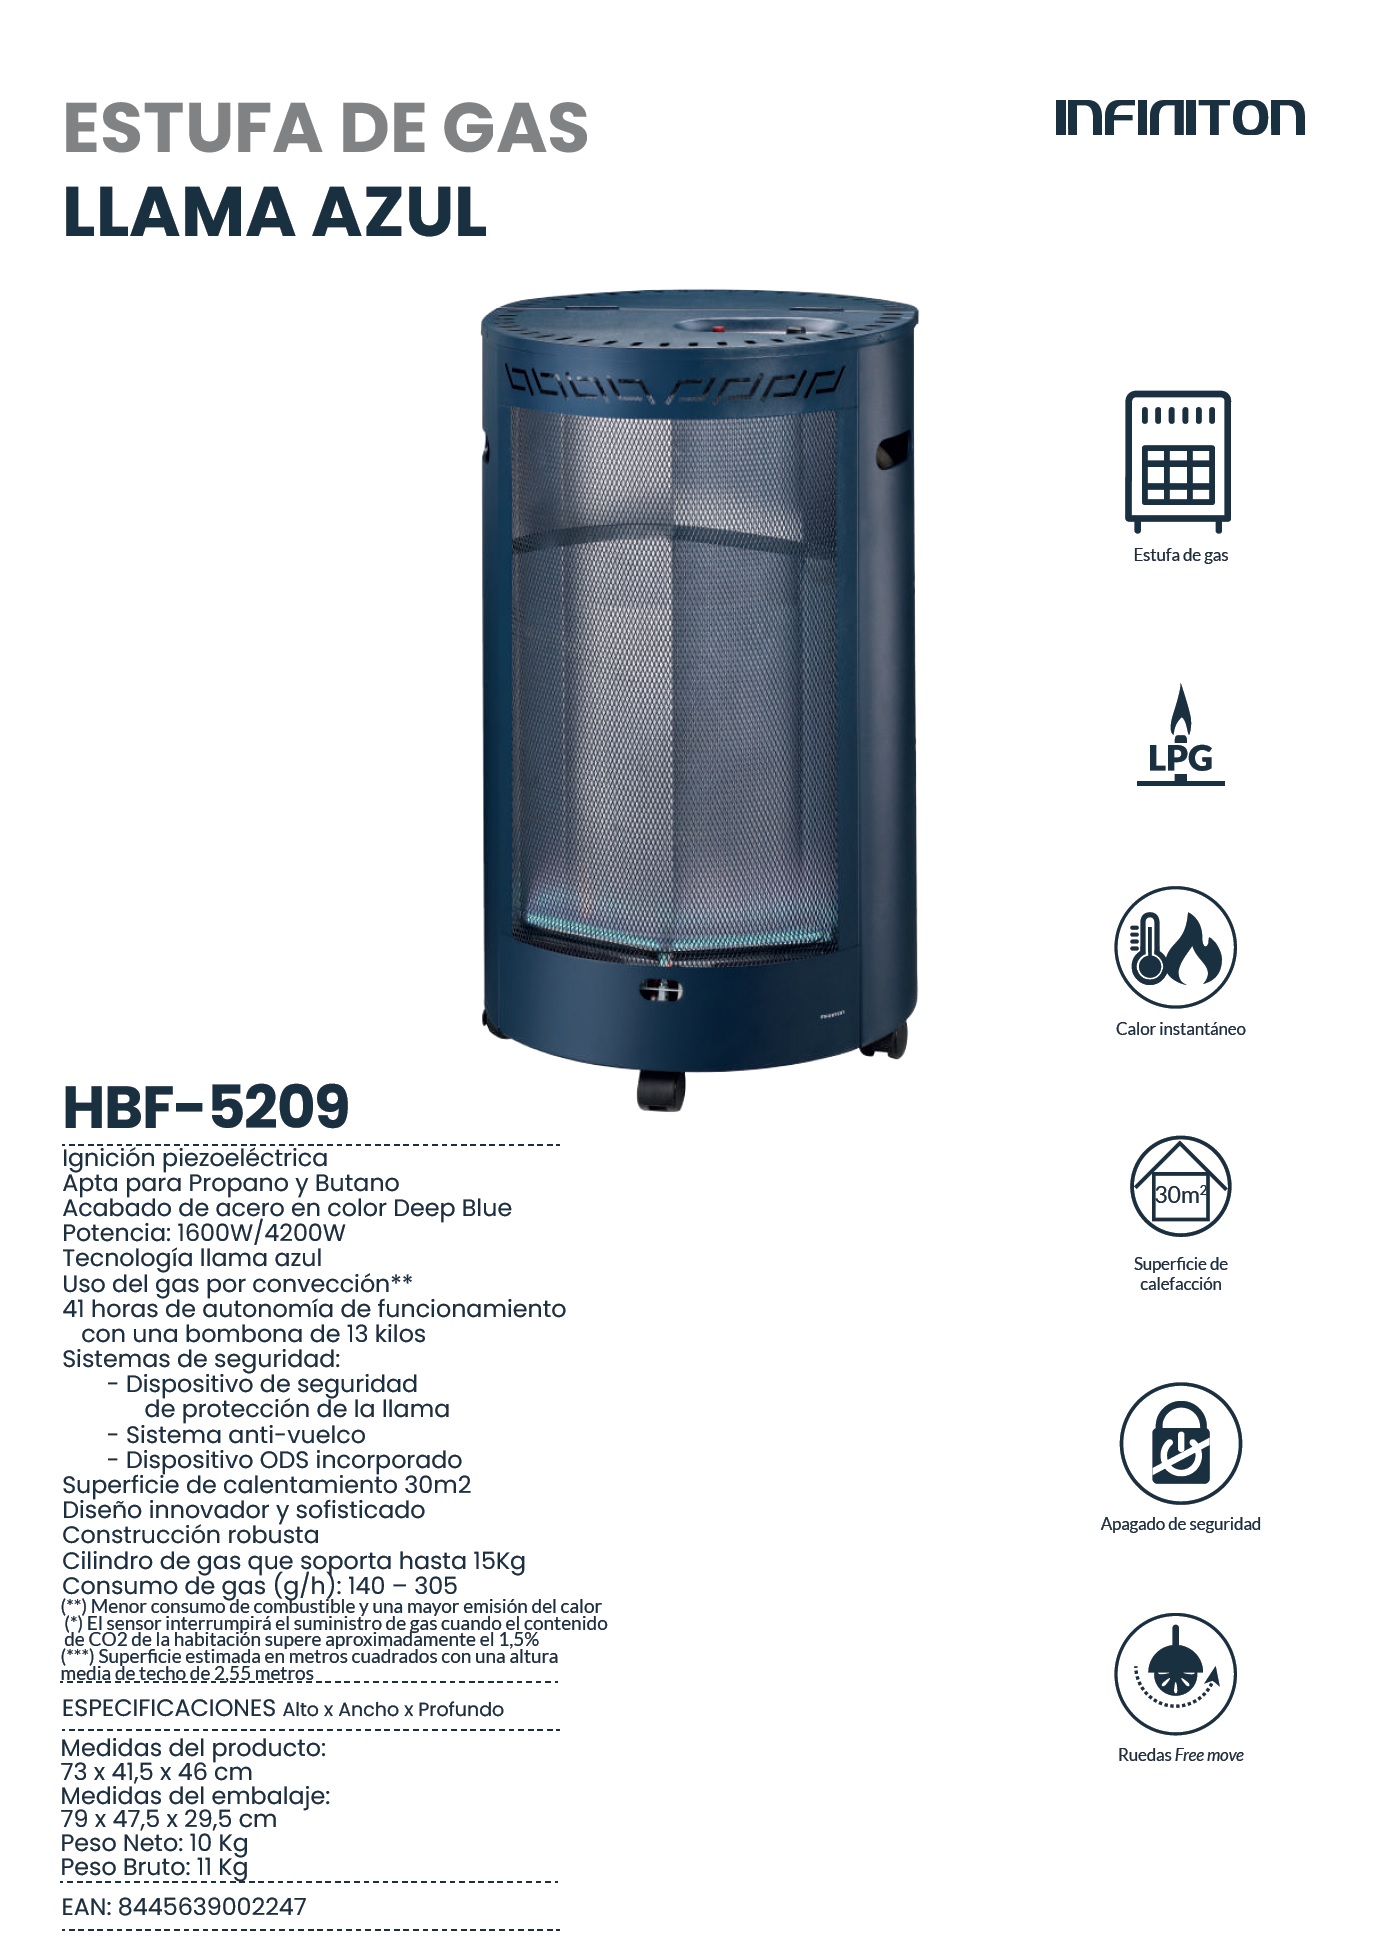 ESTUFA GAS HBF 5209 Llama Azul Redonda